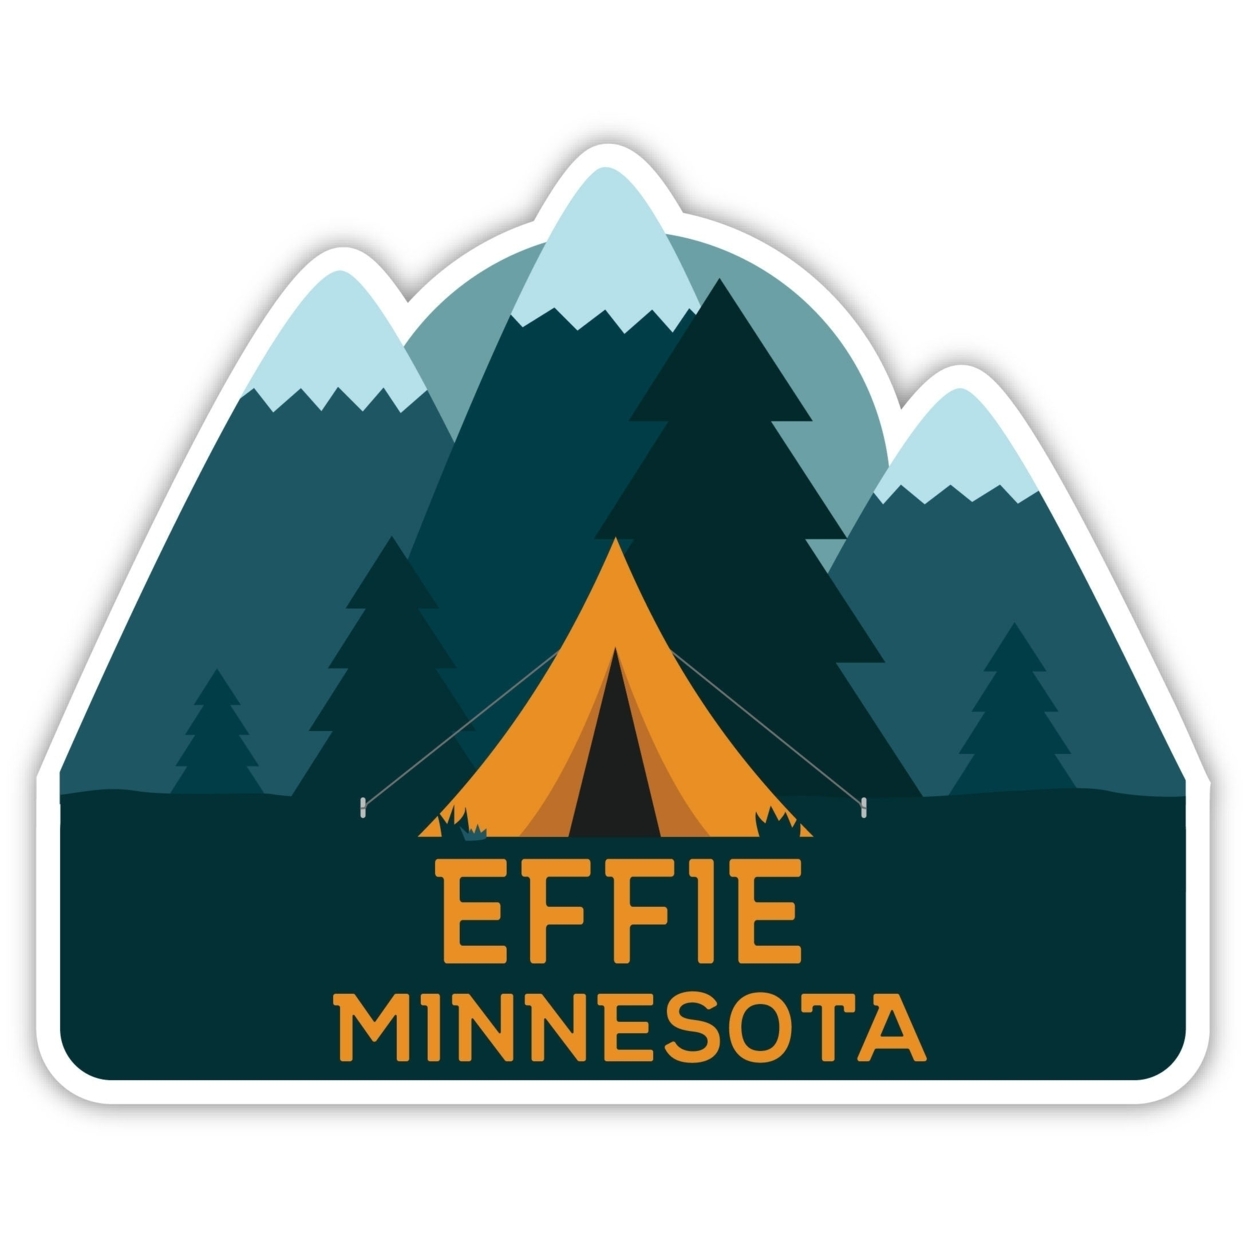 Effie Minnesota Souvenir Decorative Stickers (Choose Theme And Size) - Single Unit, 10-Inch, Tent